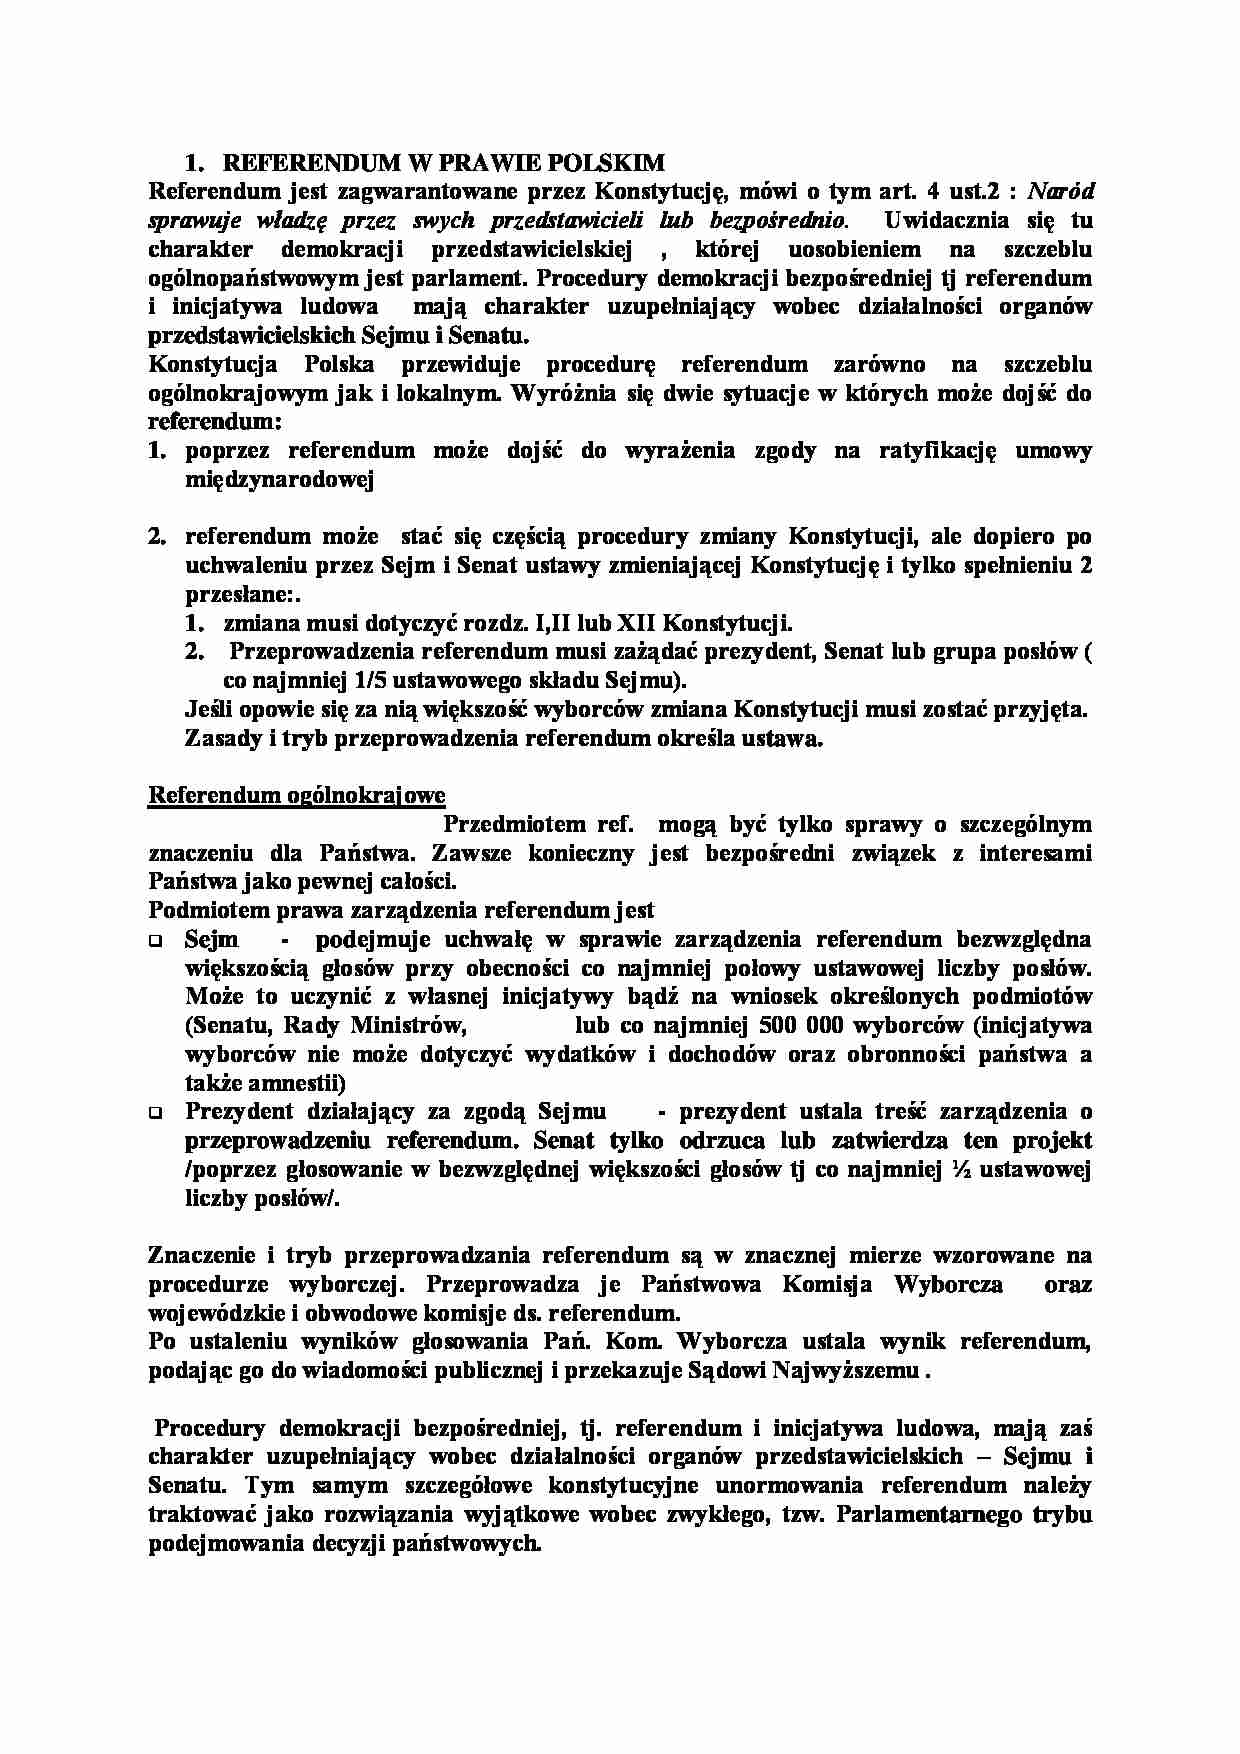 Referendum w prawie polskim-opracowanie - strona 1